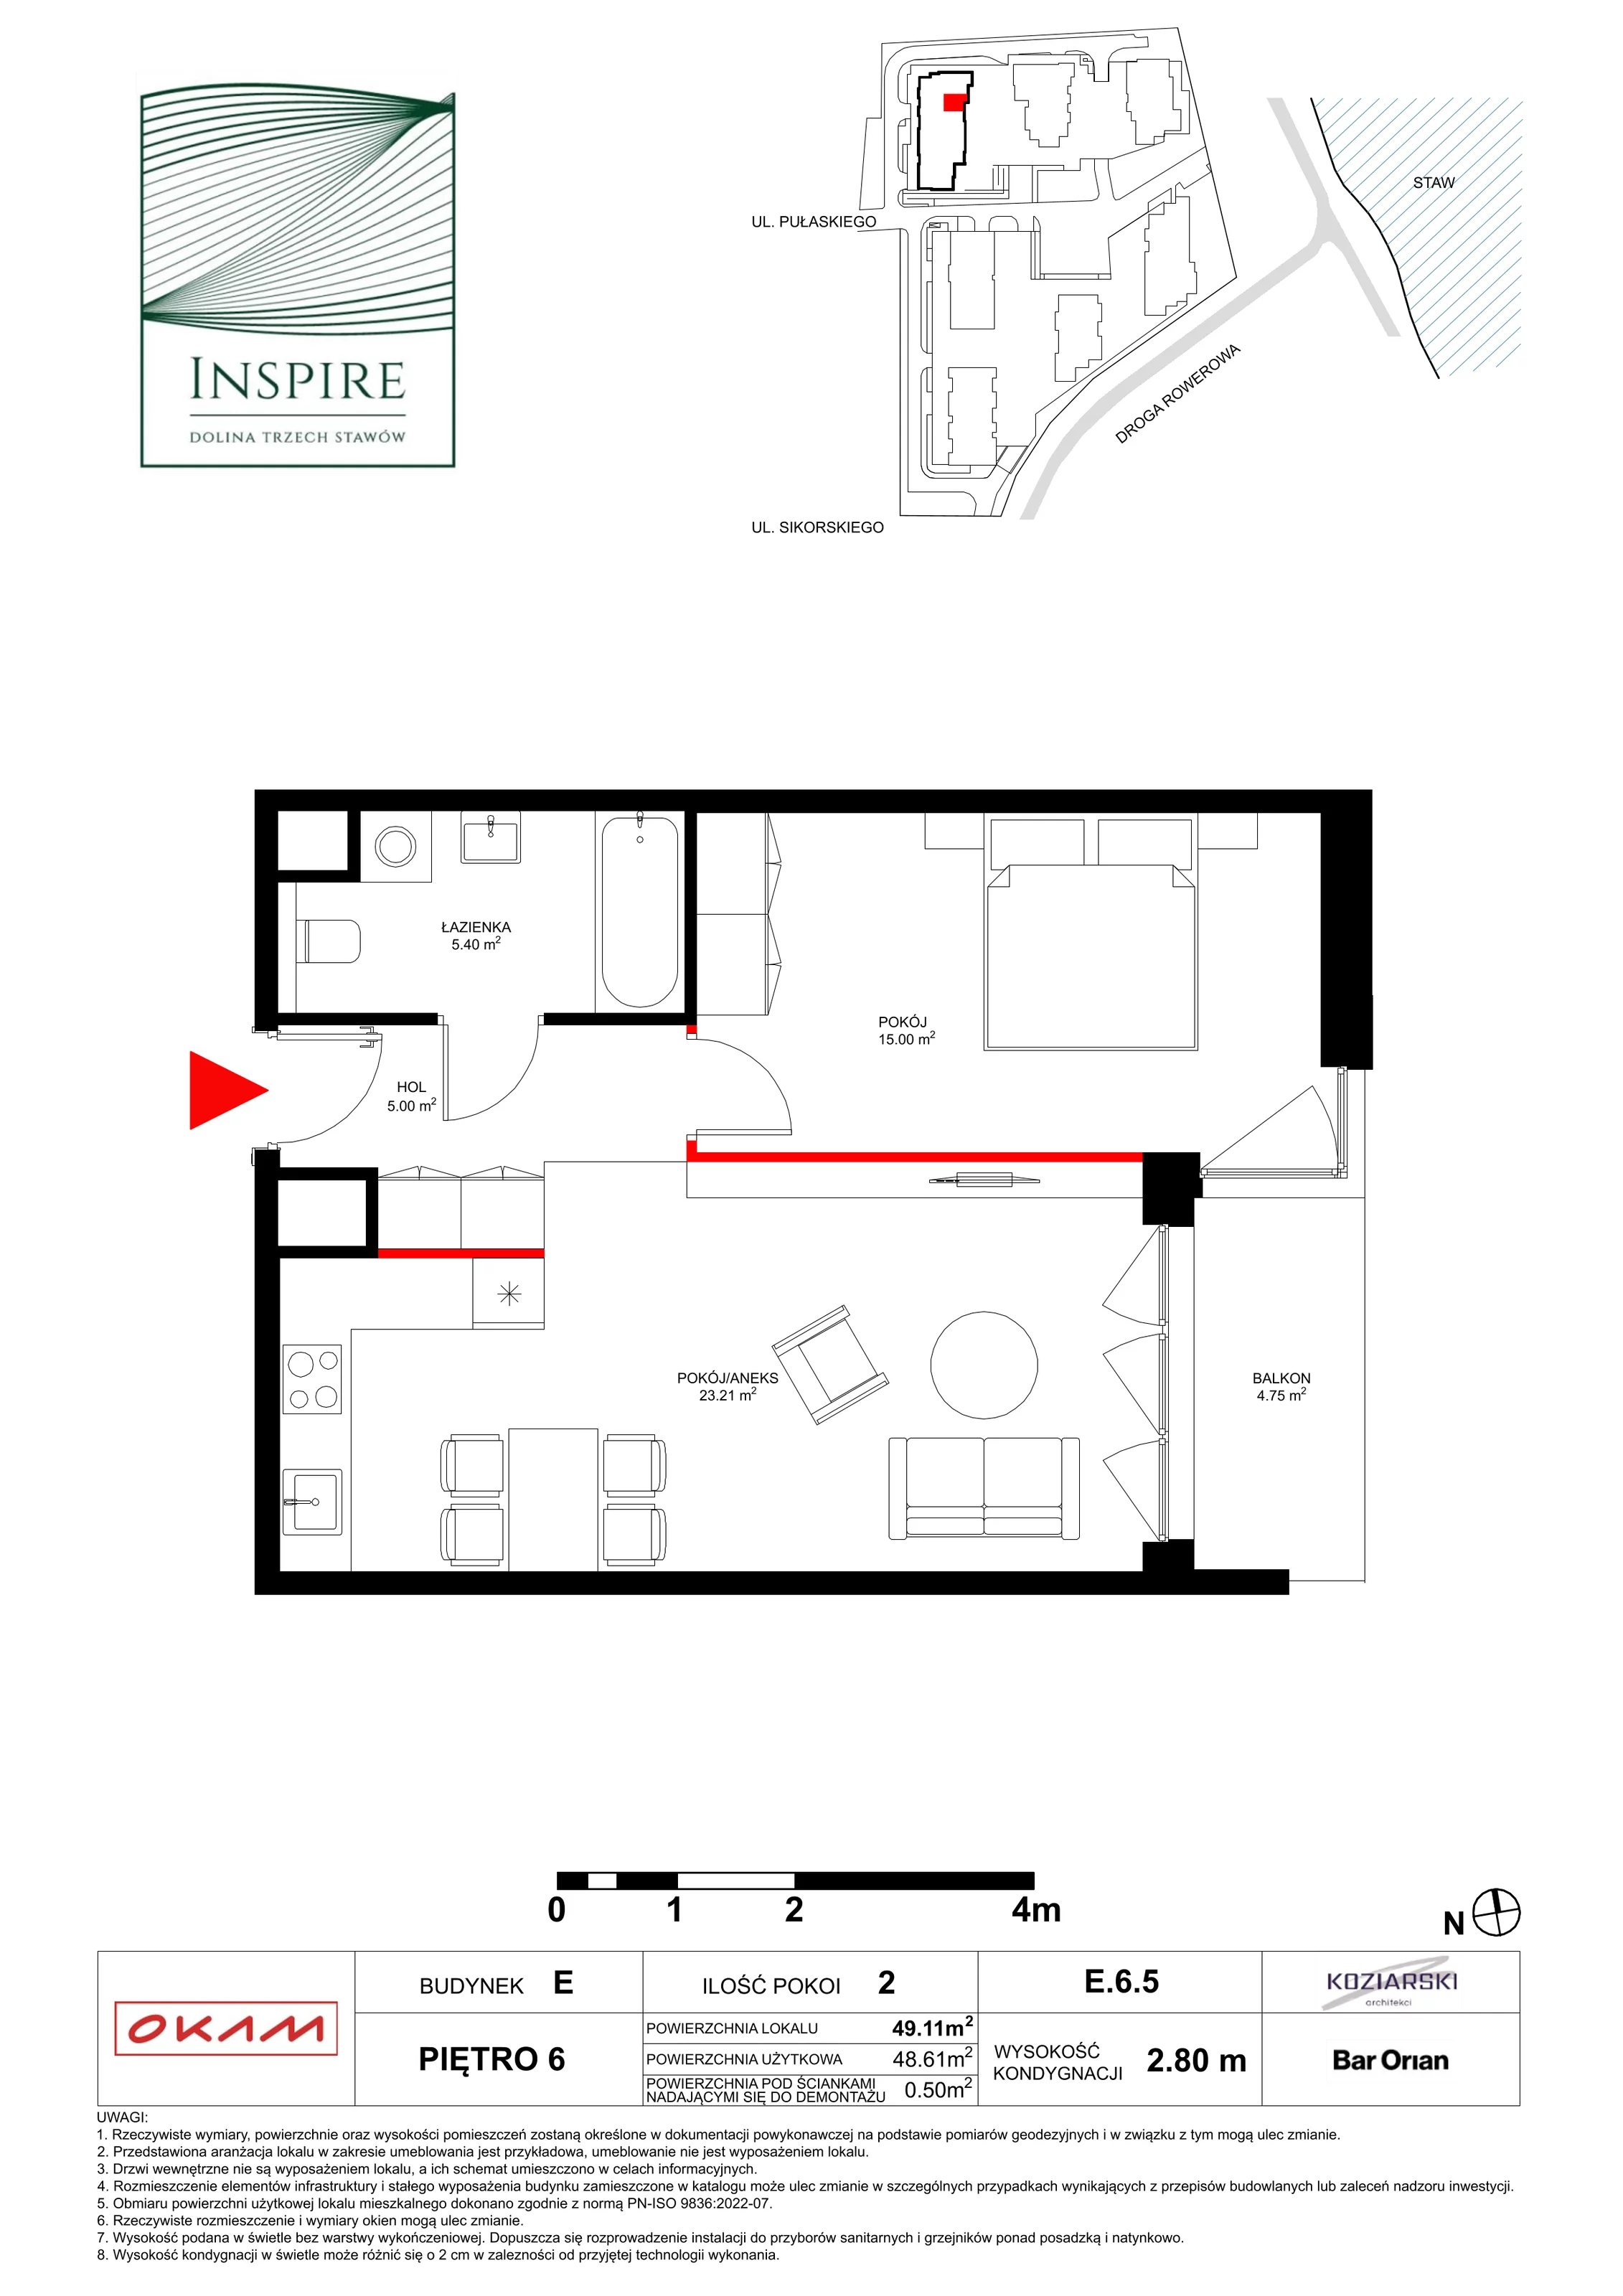 Apartament 48,61 m², piętro 6, oferta nr E.6.5, Inspire, Katowice, Osiedle Paderewskiego-Muchowiec, Dolina Trzech Stawów, ul. gen. Sikorskiego 41